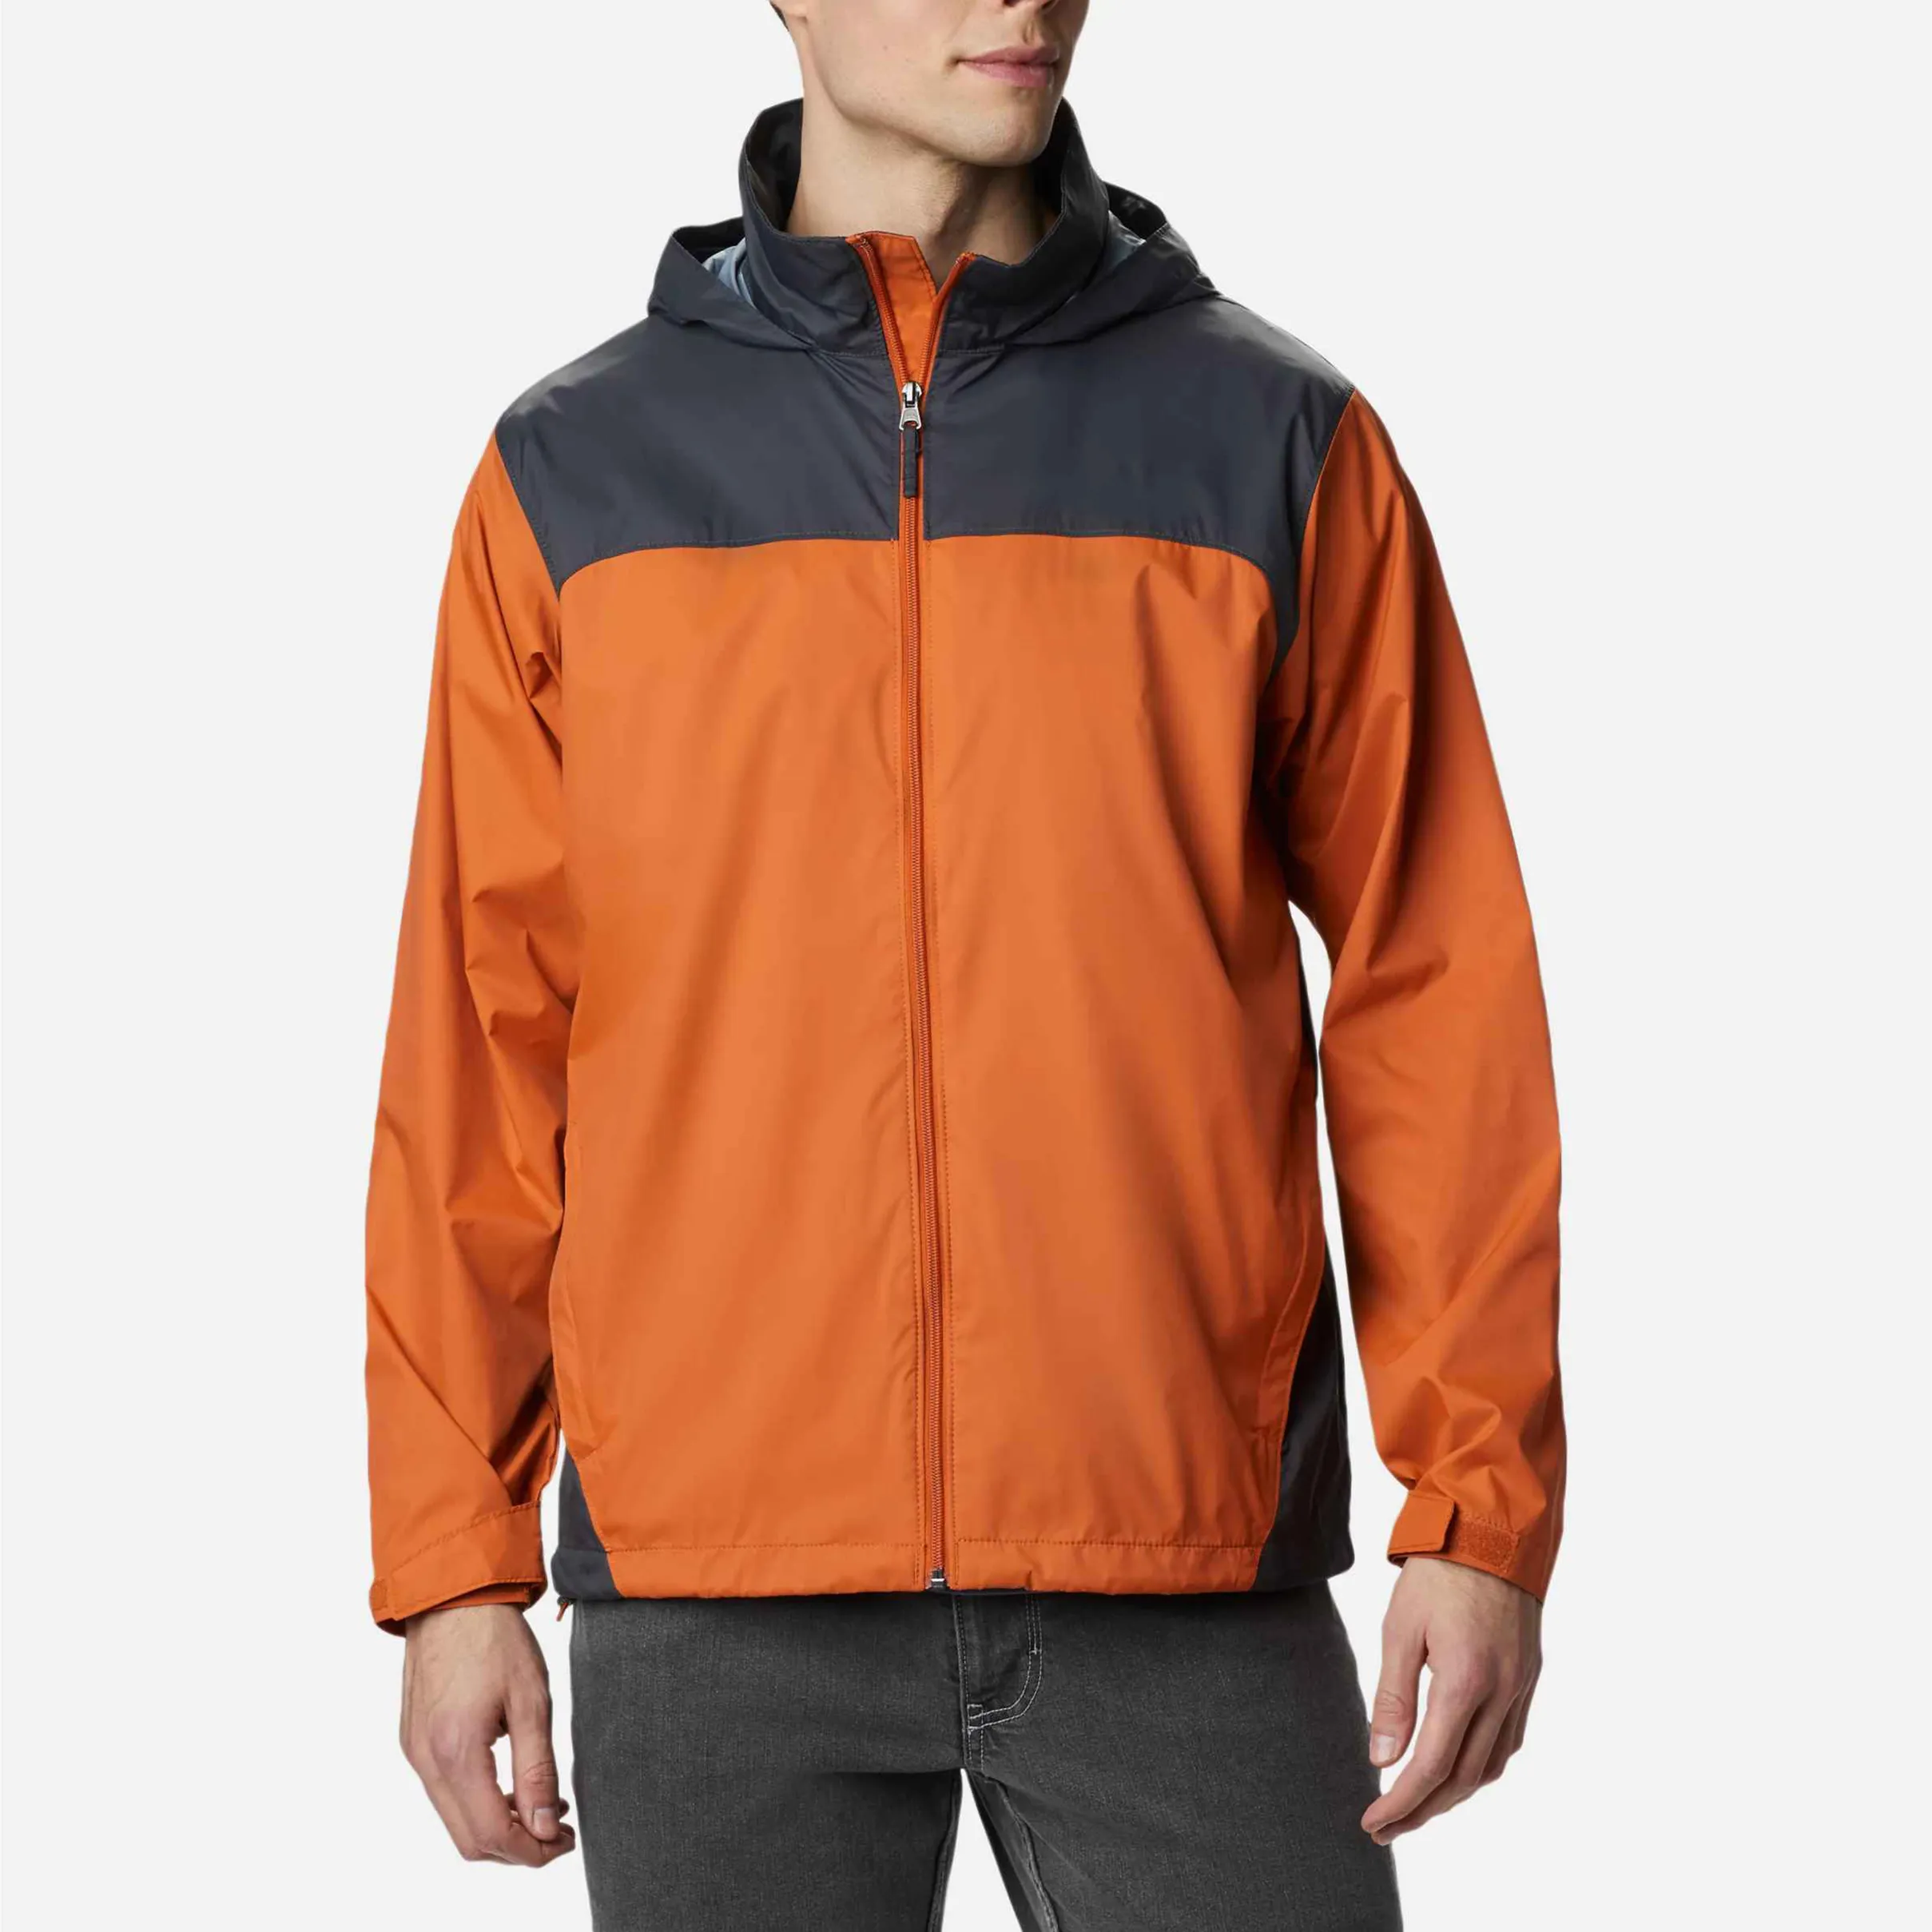 Men Custom Logo Design Street Wear Windbreaker Rain Jacket Nylon Soft Shell Waterproof Woven Outdoor Sports Running Jacket